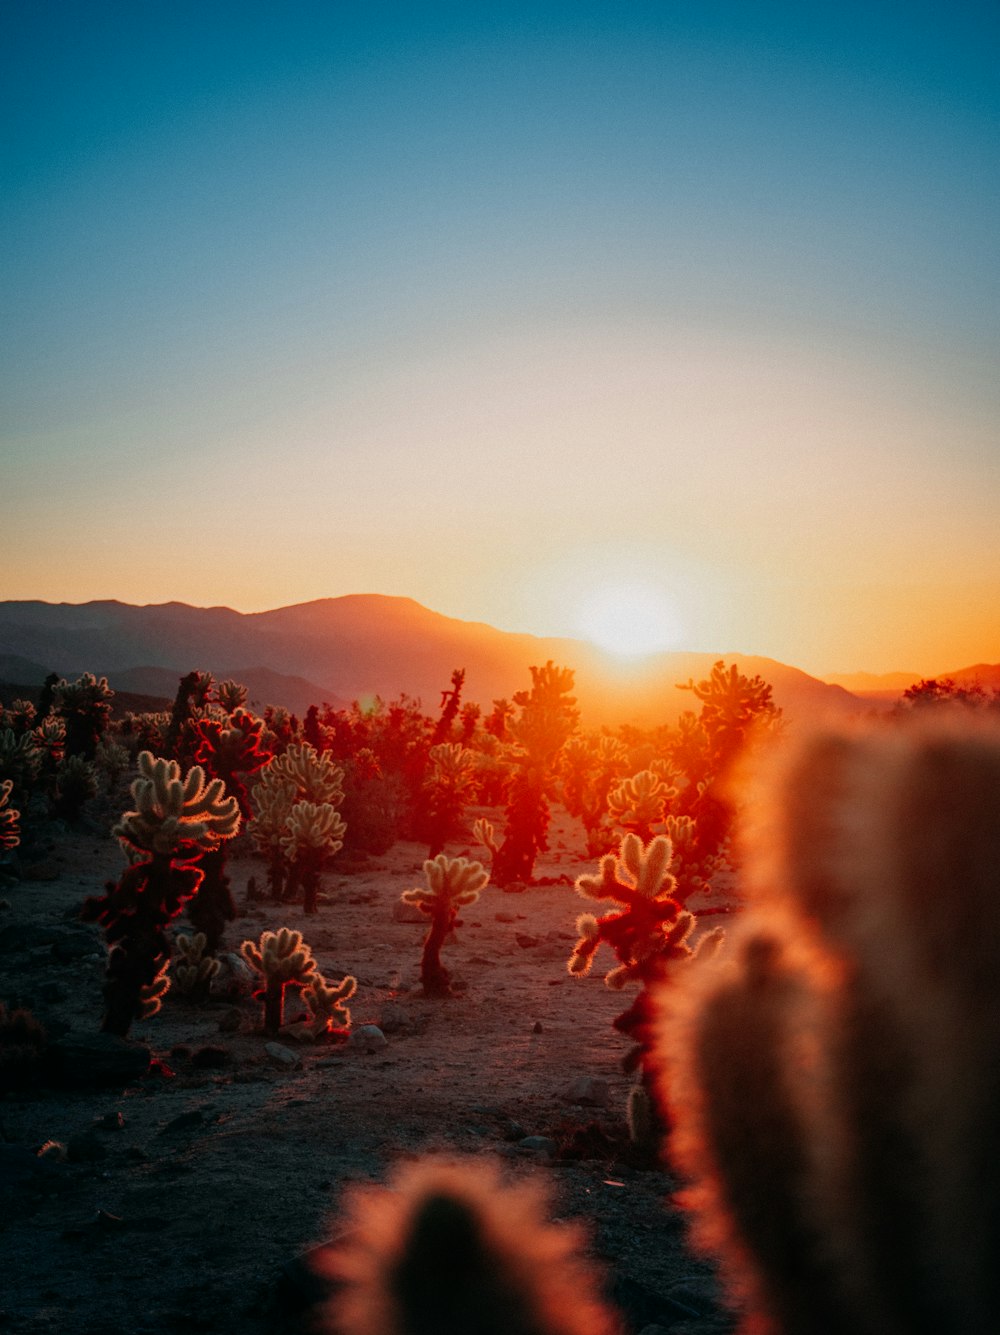 Die Sonne geht über einer Wüste mit Kakteen unter